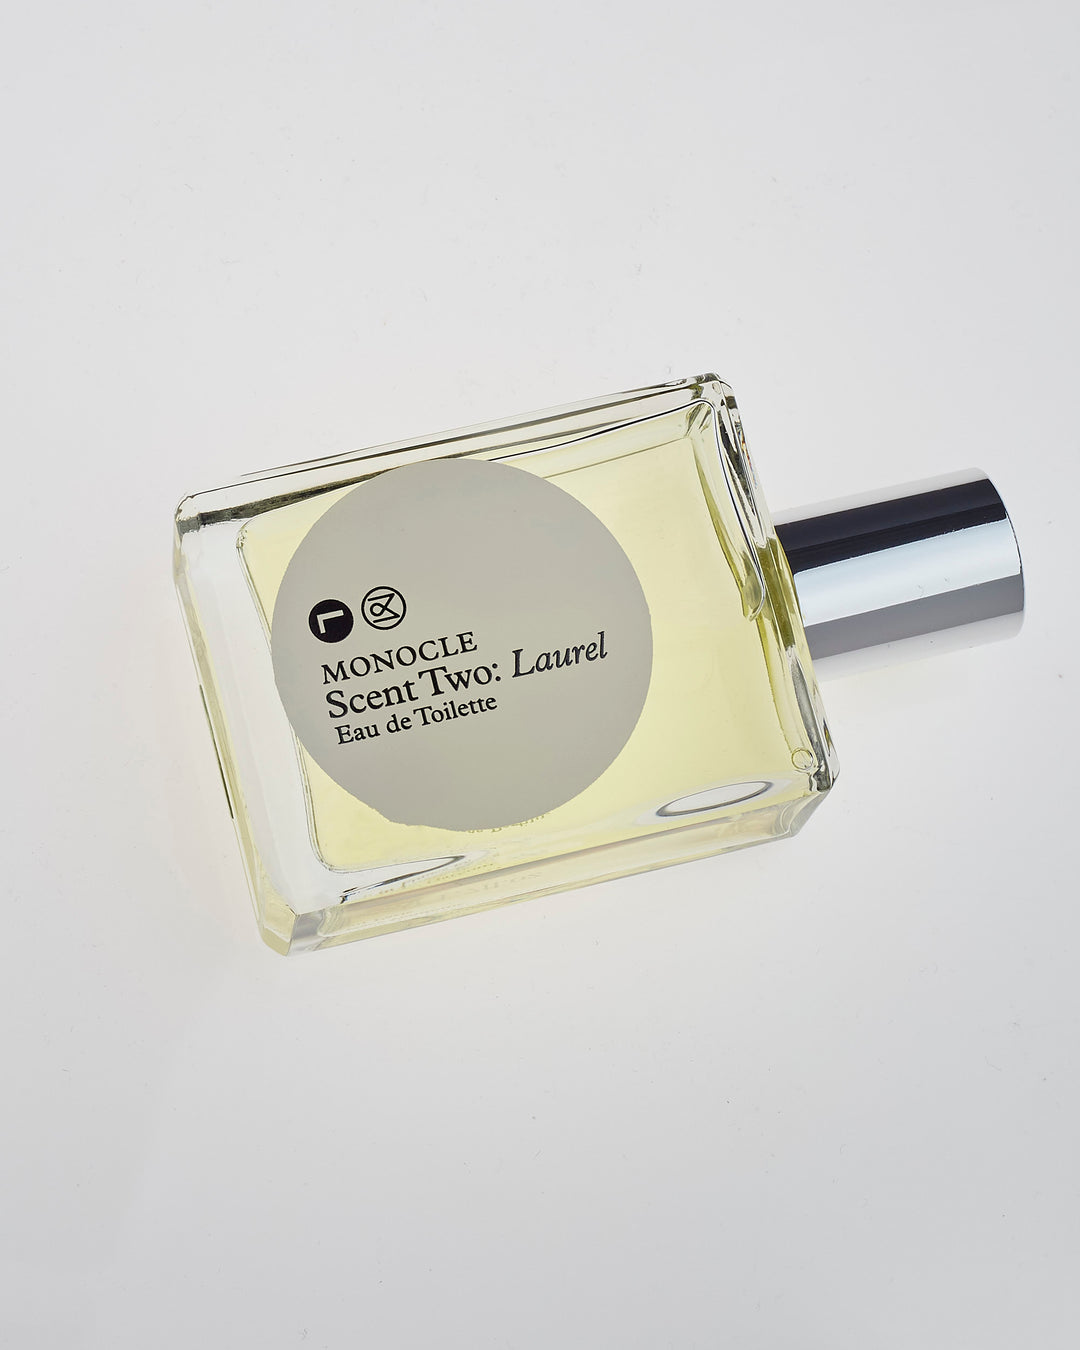 Comme des Garçons Parfum x Monocle Scent 2 Laurel Eau de Toilette 50mL